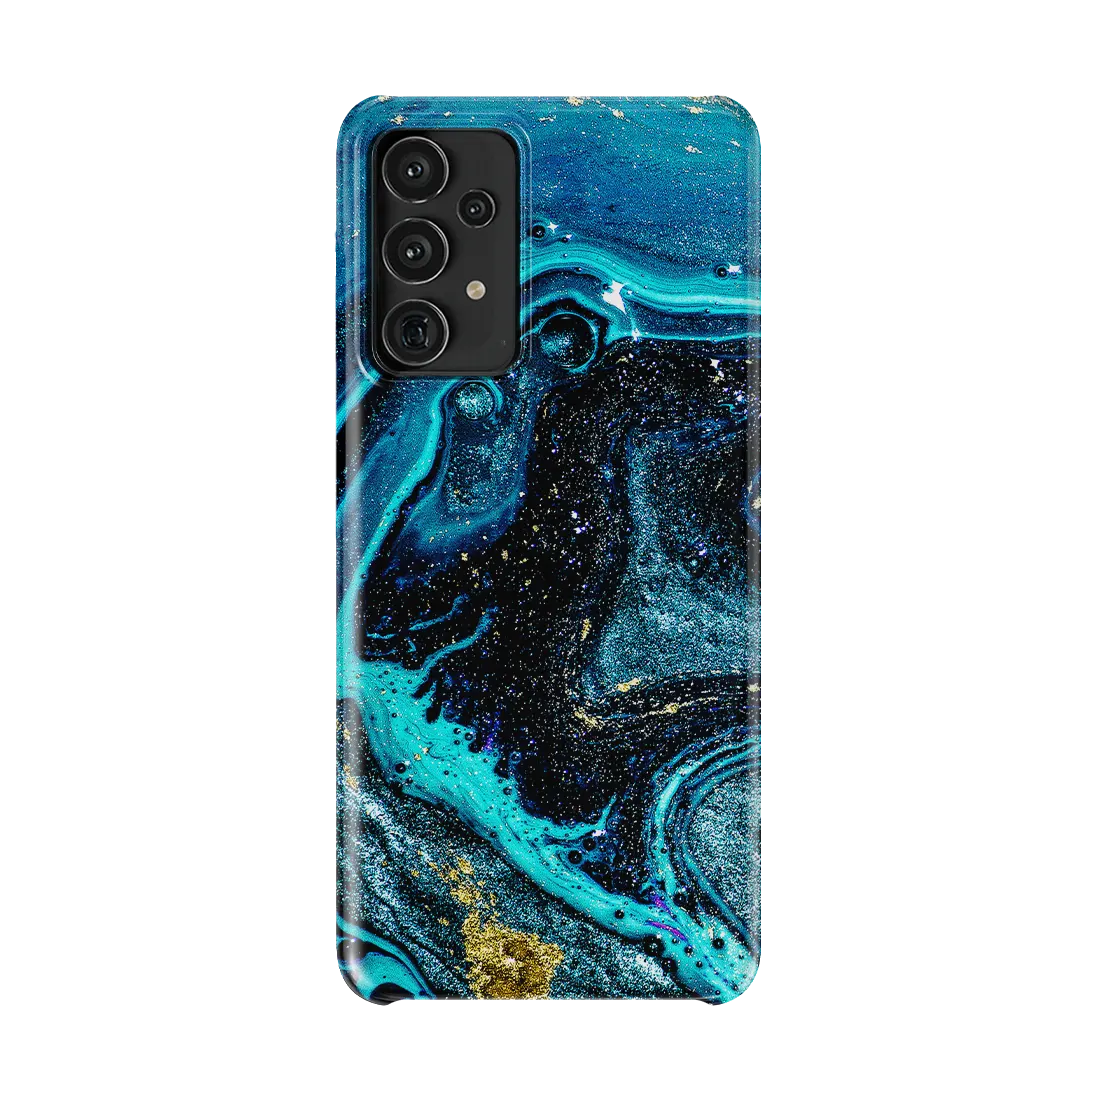 Poseidon Samsung A13 Case